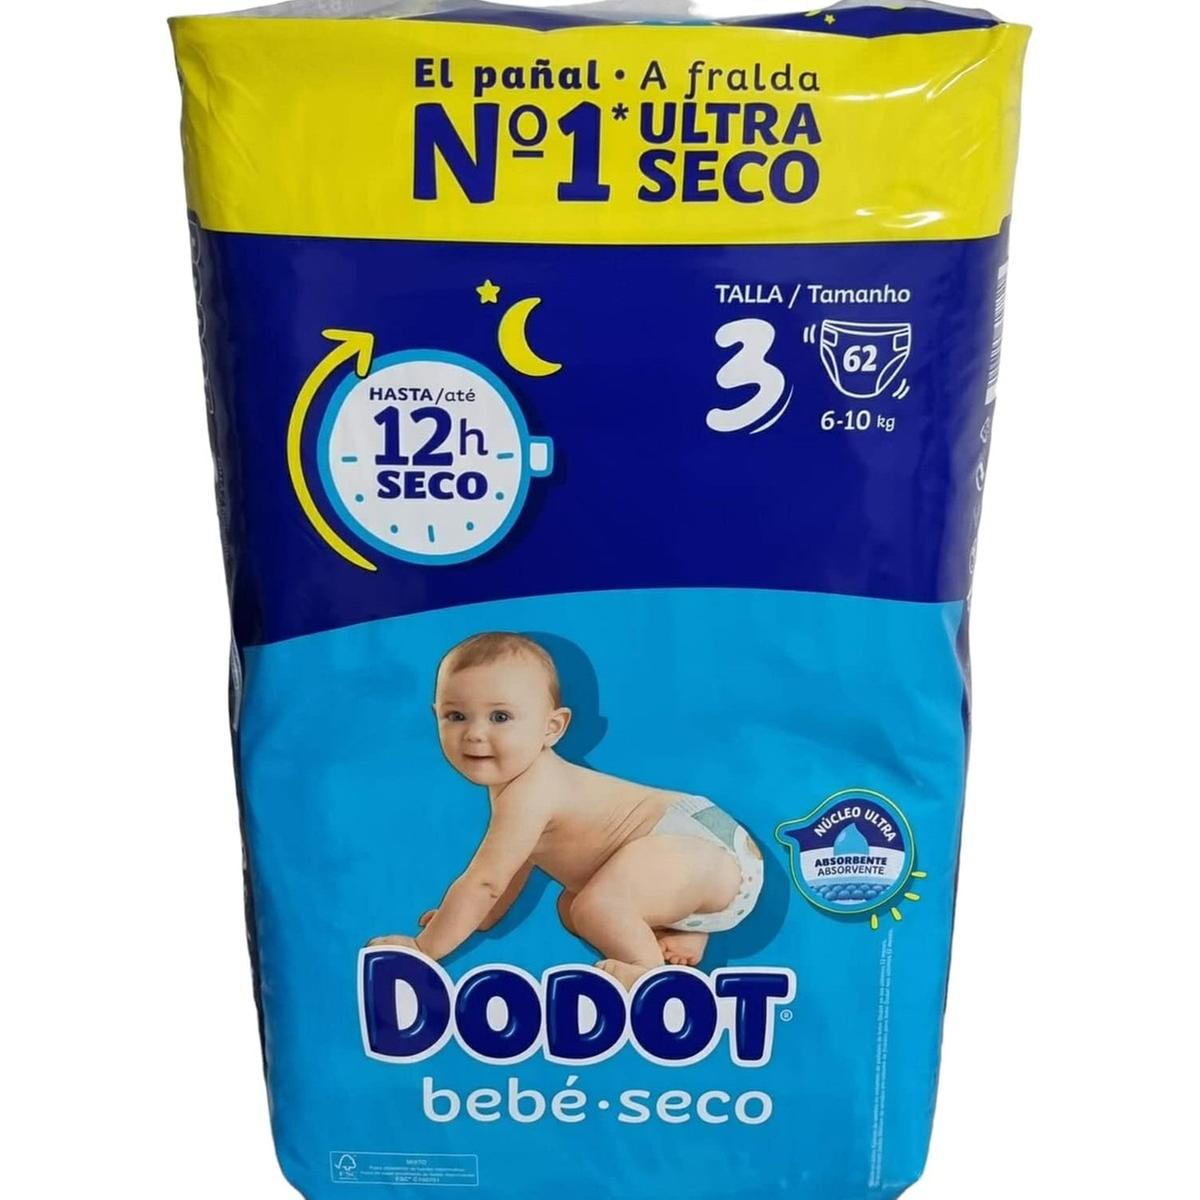 Dodot - ¡1 año de toallitas Dodot Aqua Pure GRATIS! Sí